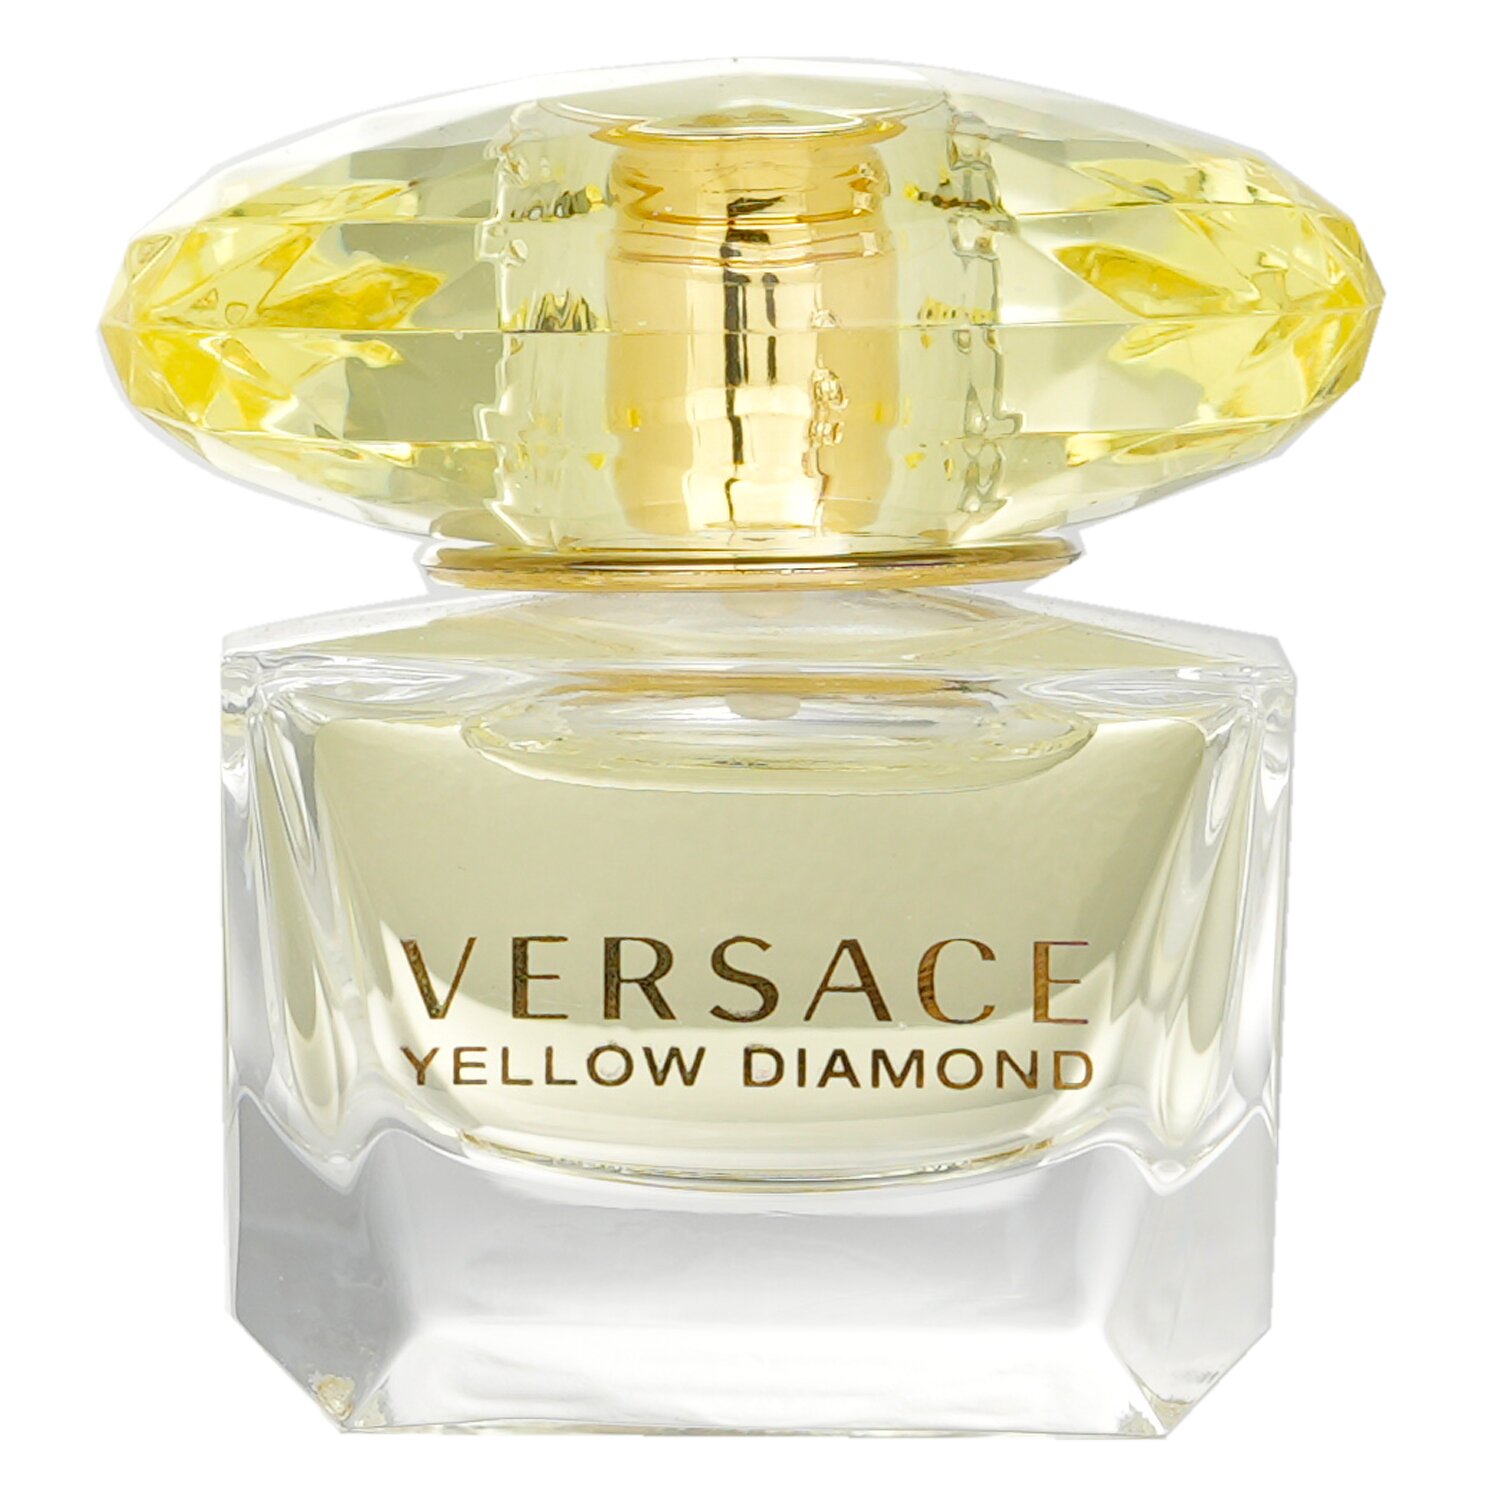 凡賽斯 Versace - Yellow Diamond 黃鑽淡香水 (迷你版)